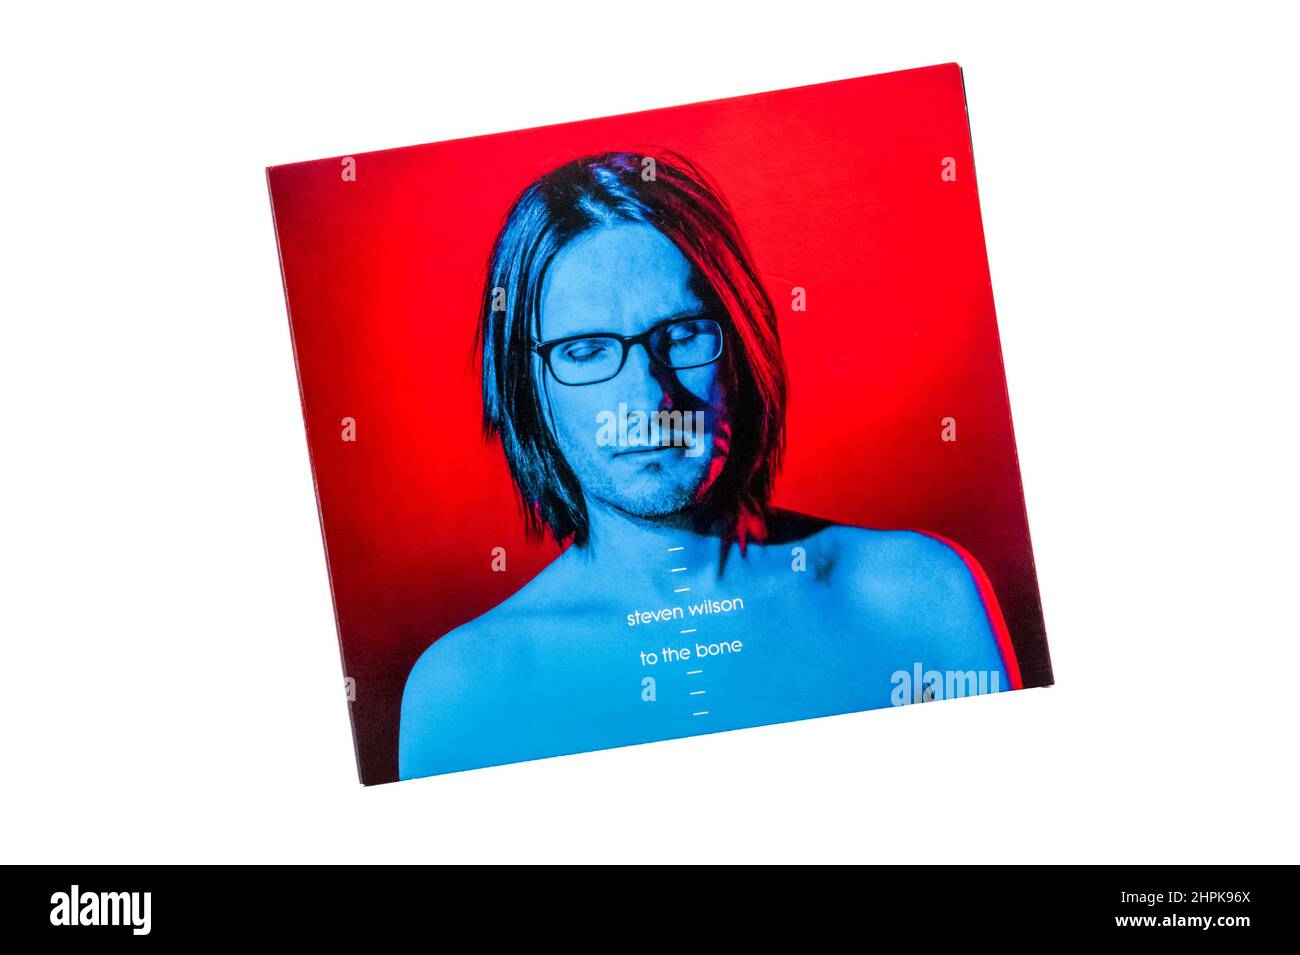 To the Bone es el álbum de estudio de 5th del músico británico Steven Wilson. Publicado en 2017. Foto de stock